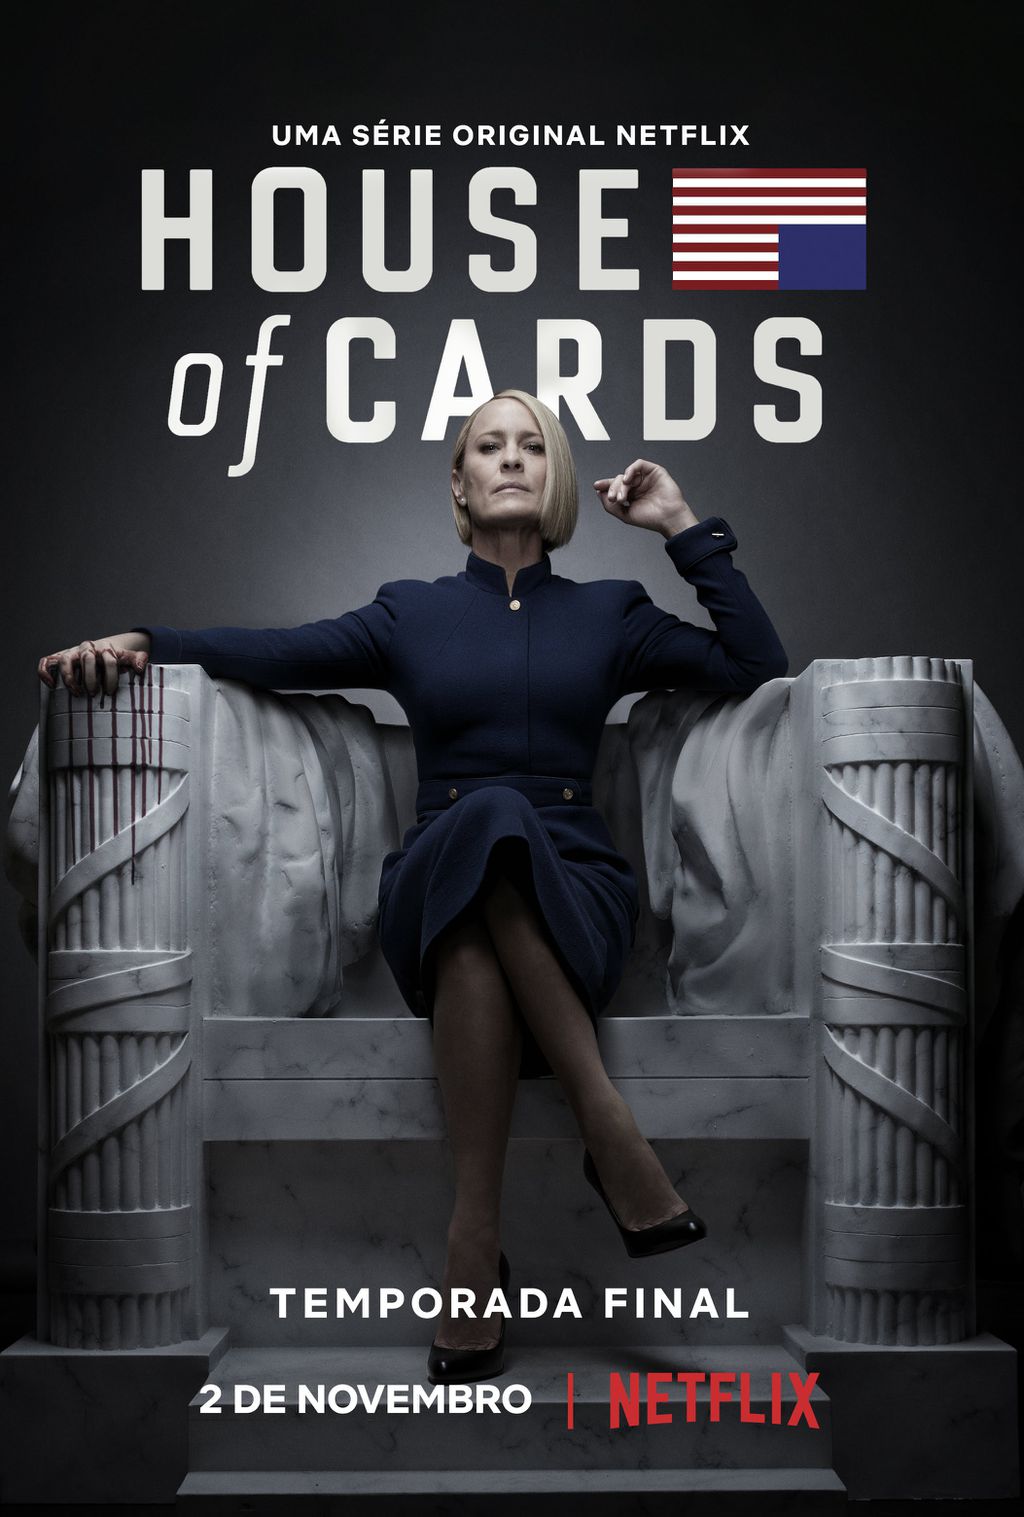 House of Cards volta para sua temporada final em 2 de novembro na Netflix